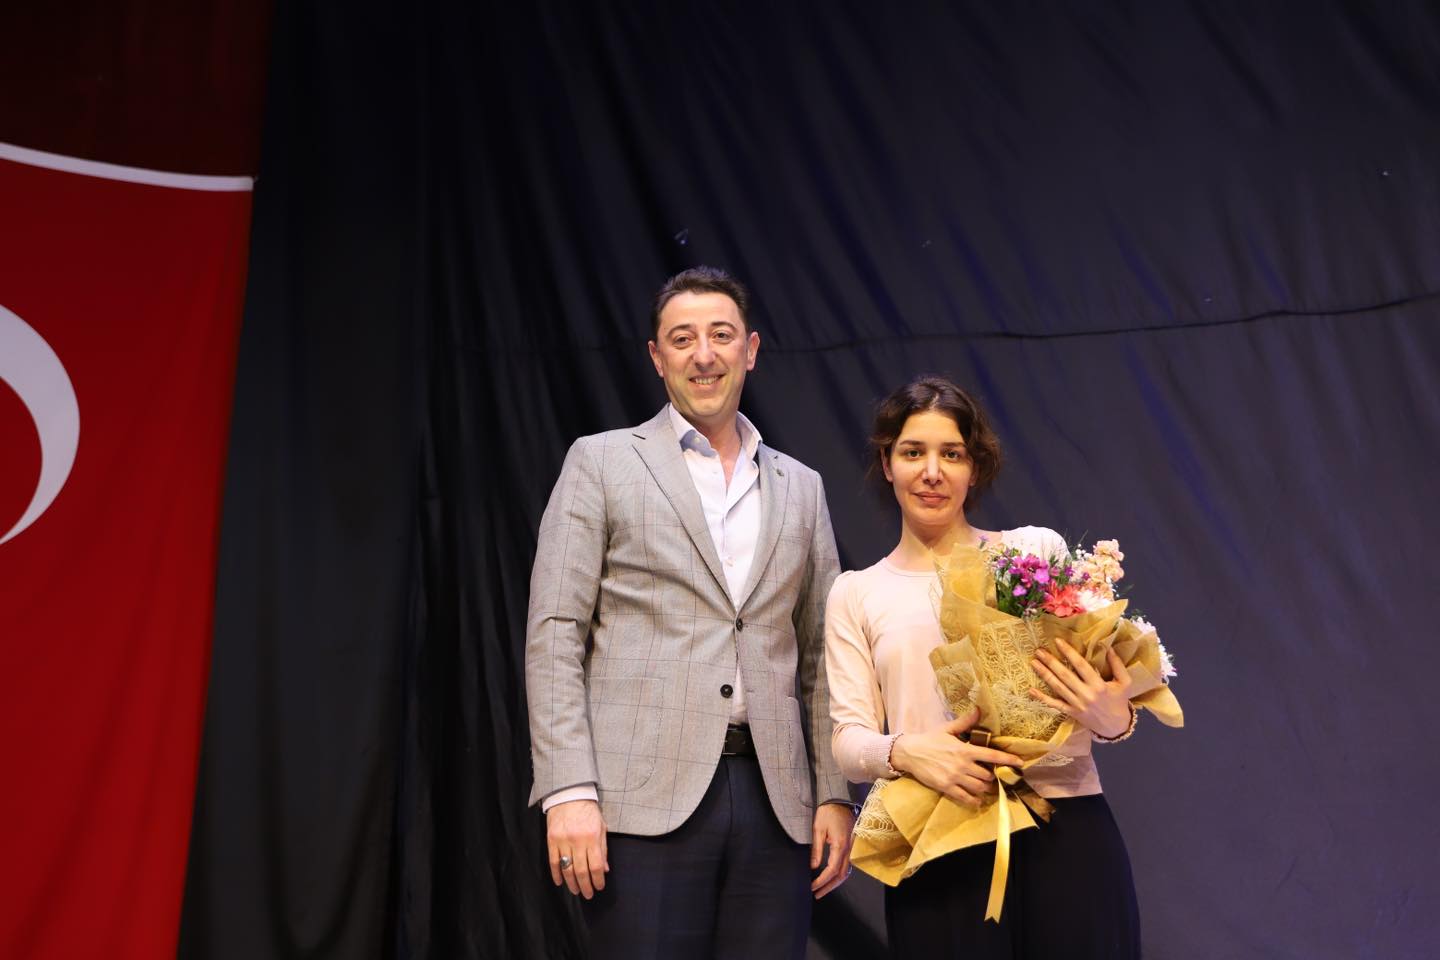 Türkiye’nin ve Avrupa’nın tek kadın temalı tiyatro festivali olan Kadın Oyunları Festivali’nin Bandırma gösterimleri, “Tilkiler ve Kötü Kalpli İtler” adlı oyun ile başladı.